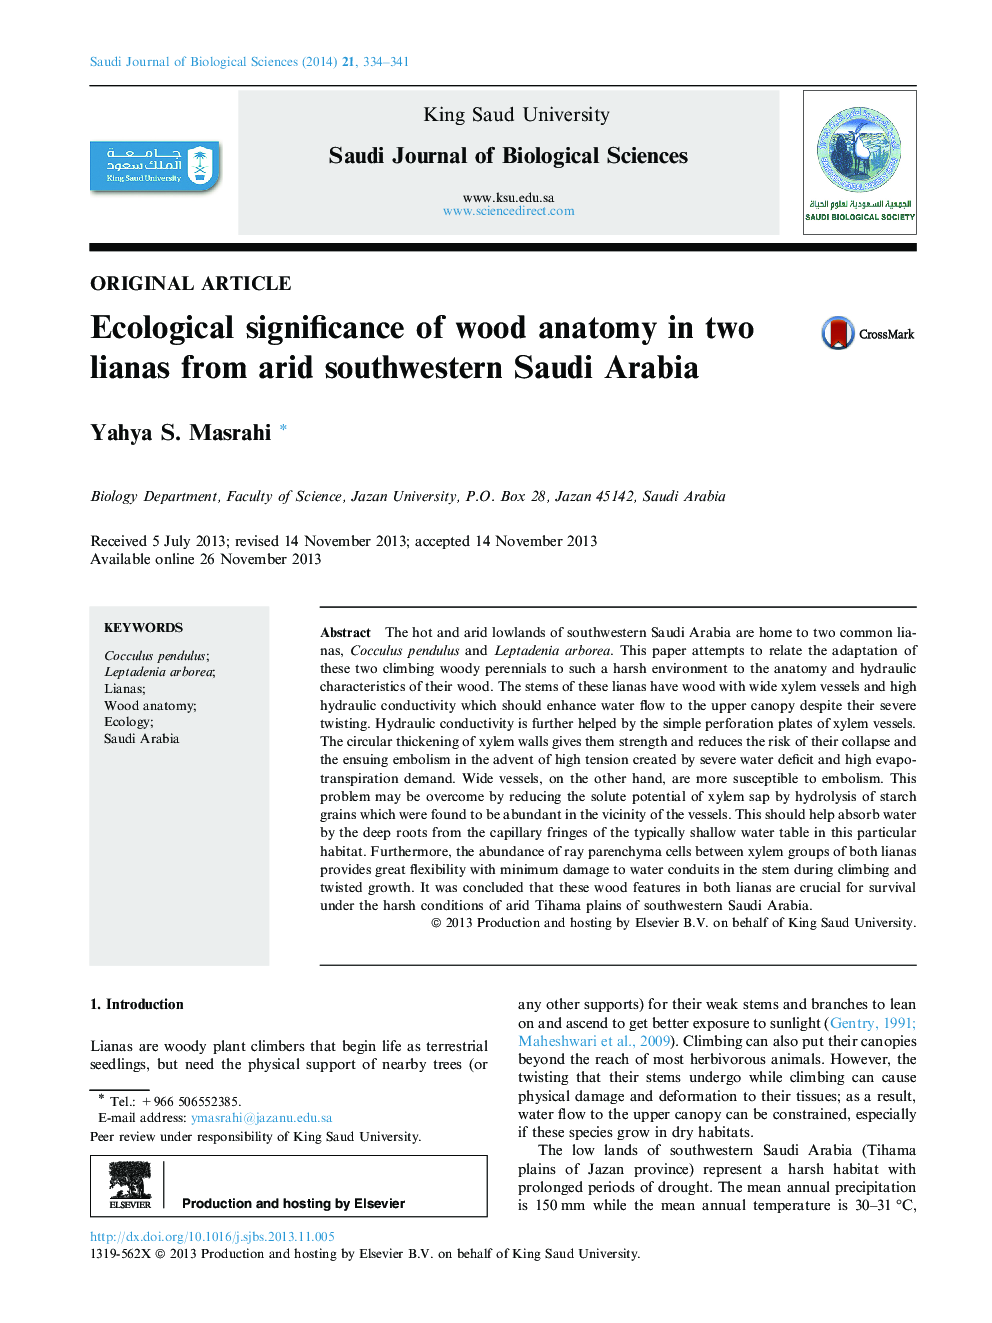 اهمیت اکولوژیکی آناتومی چوب در دو لیان از خشکی جنوب غربی عربستان سعودی 